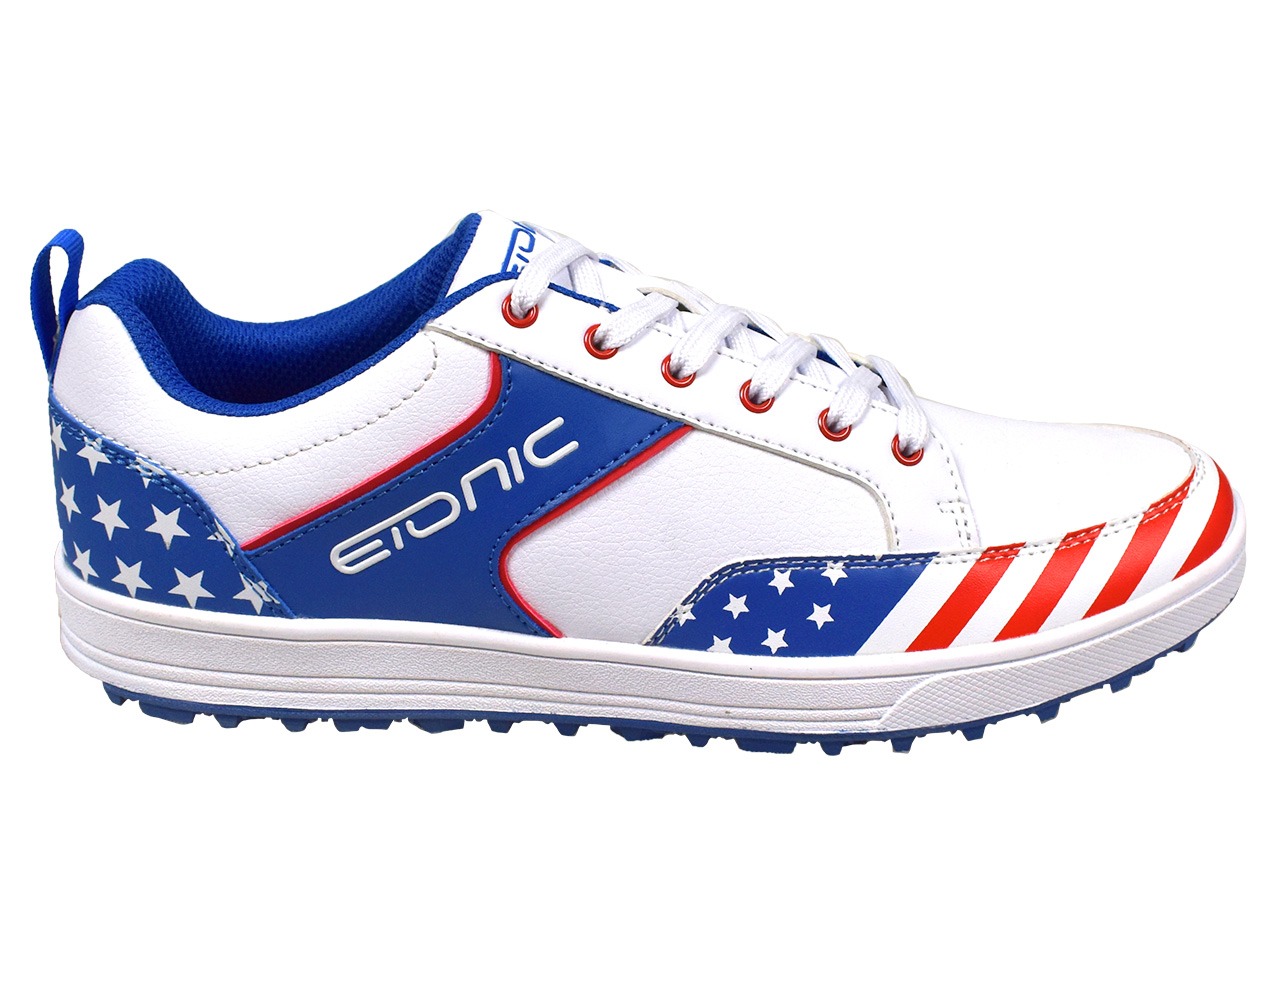 Limited Edition Etonic G-SOK 3.0 Golf Shoes